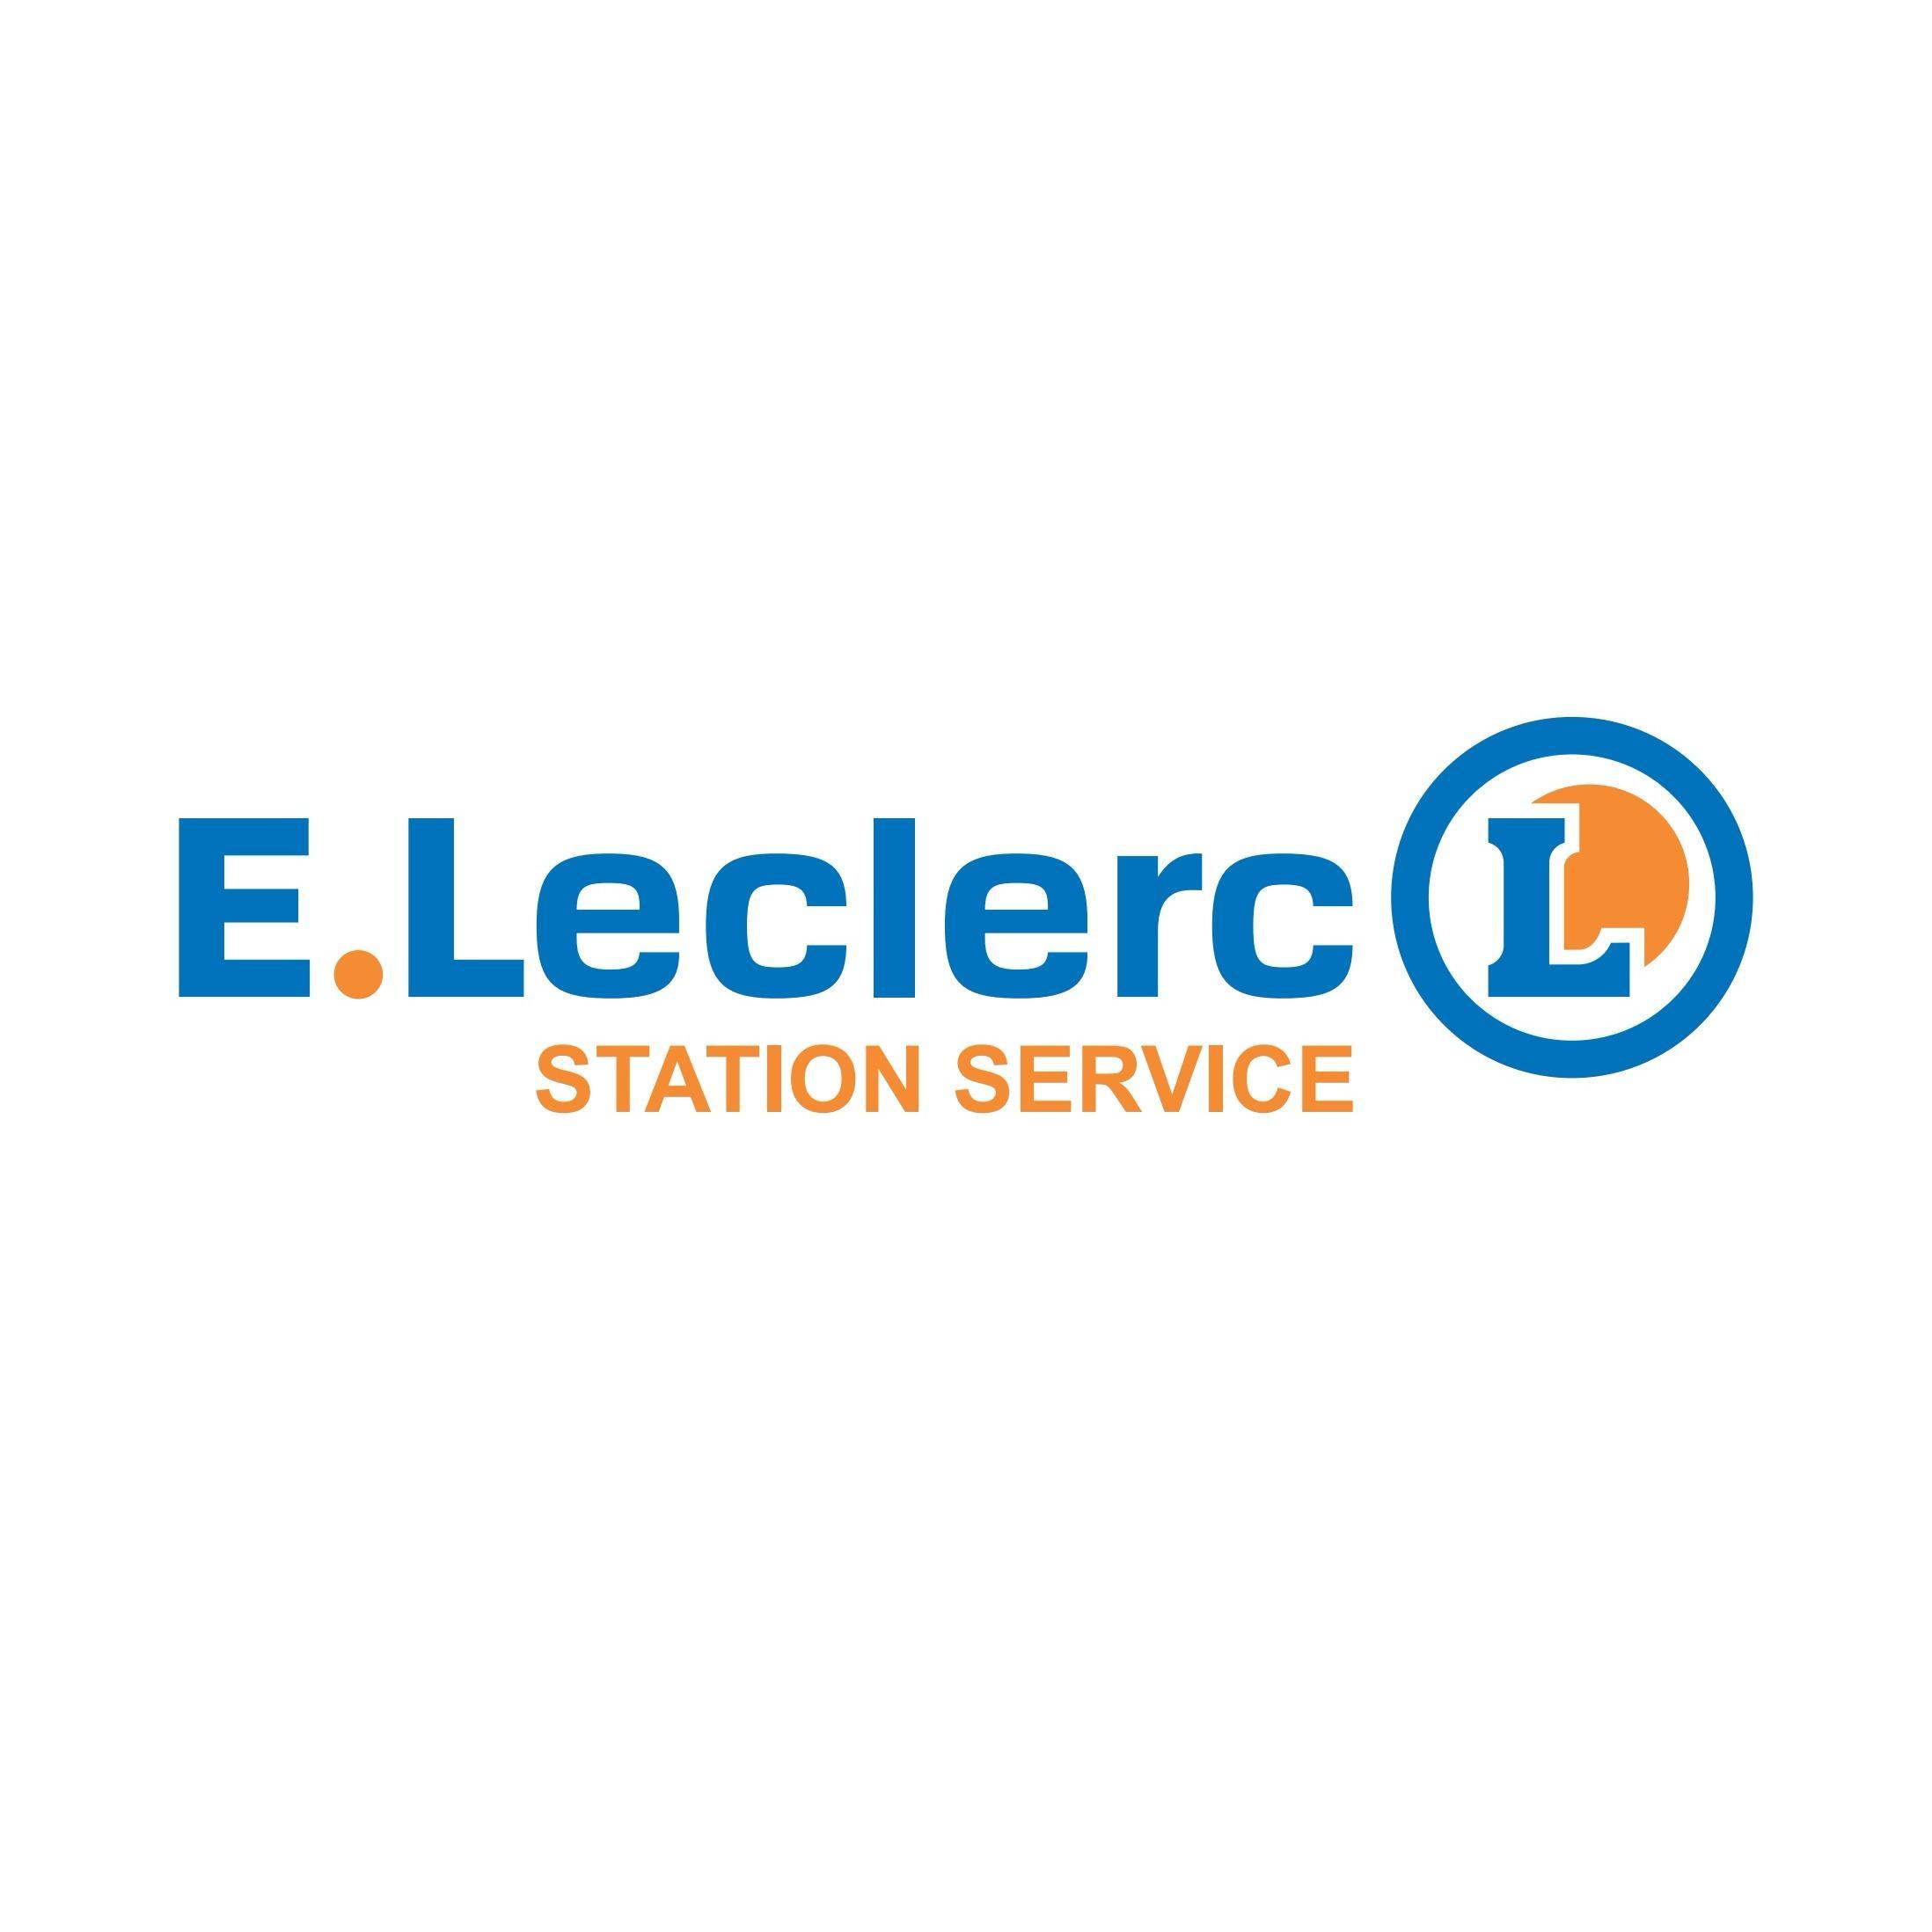 E.leclerc Station Service Chaumont